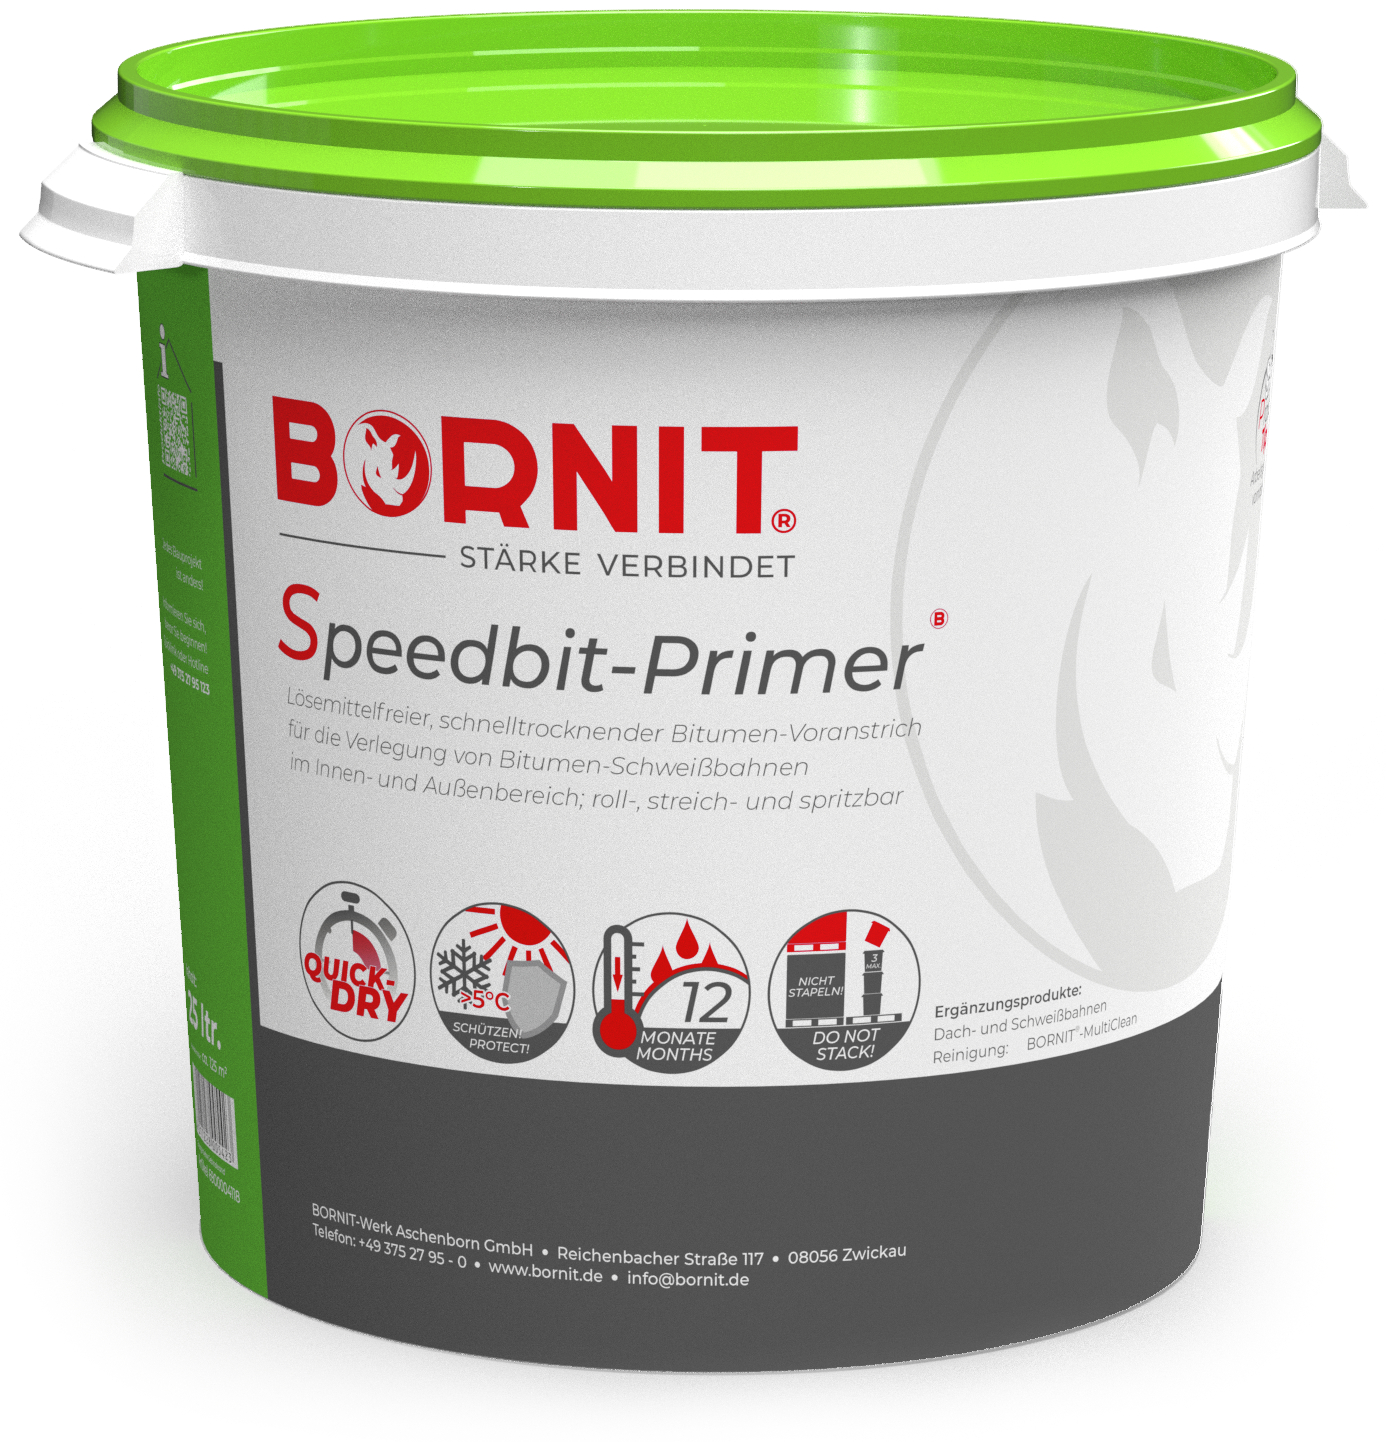 Bornit Speedbit Greenline - 25 l schnelltr./loesem.-frei